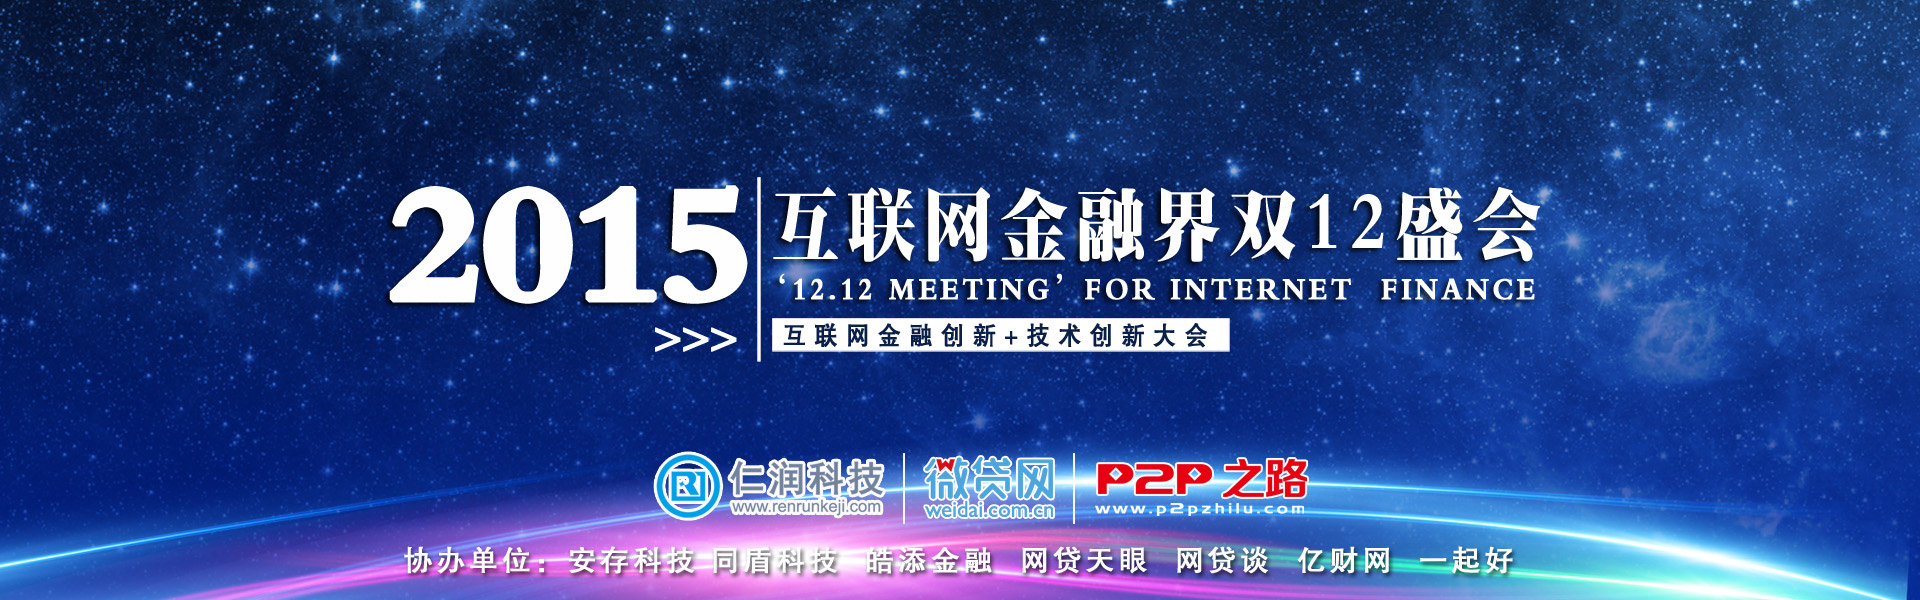 互联网金融界双12盛会.武汉见